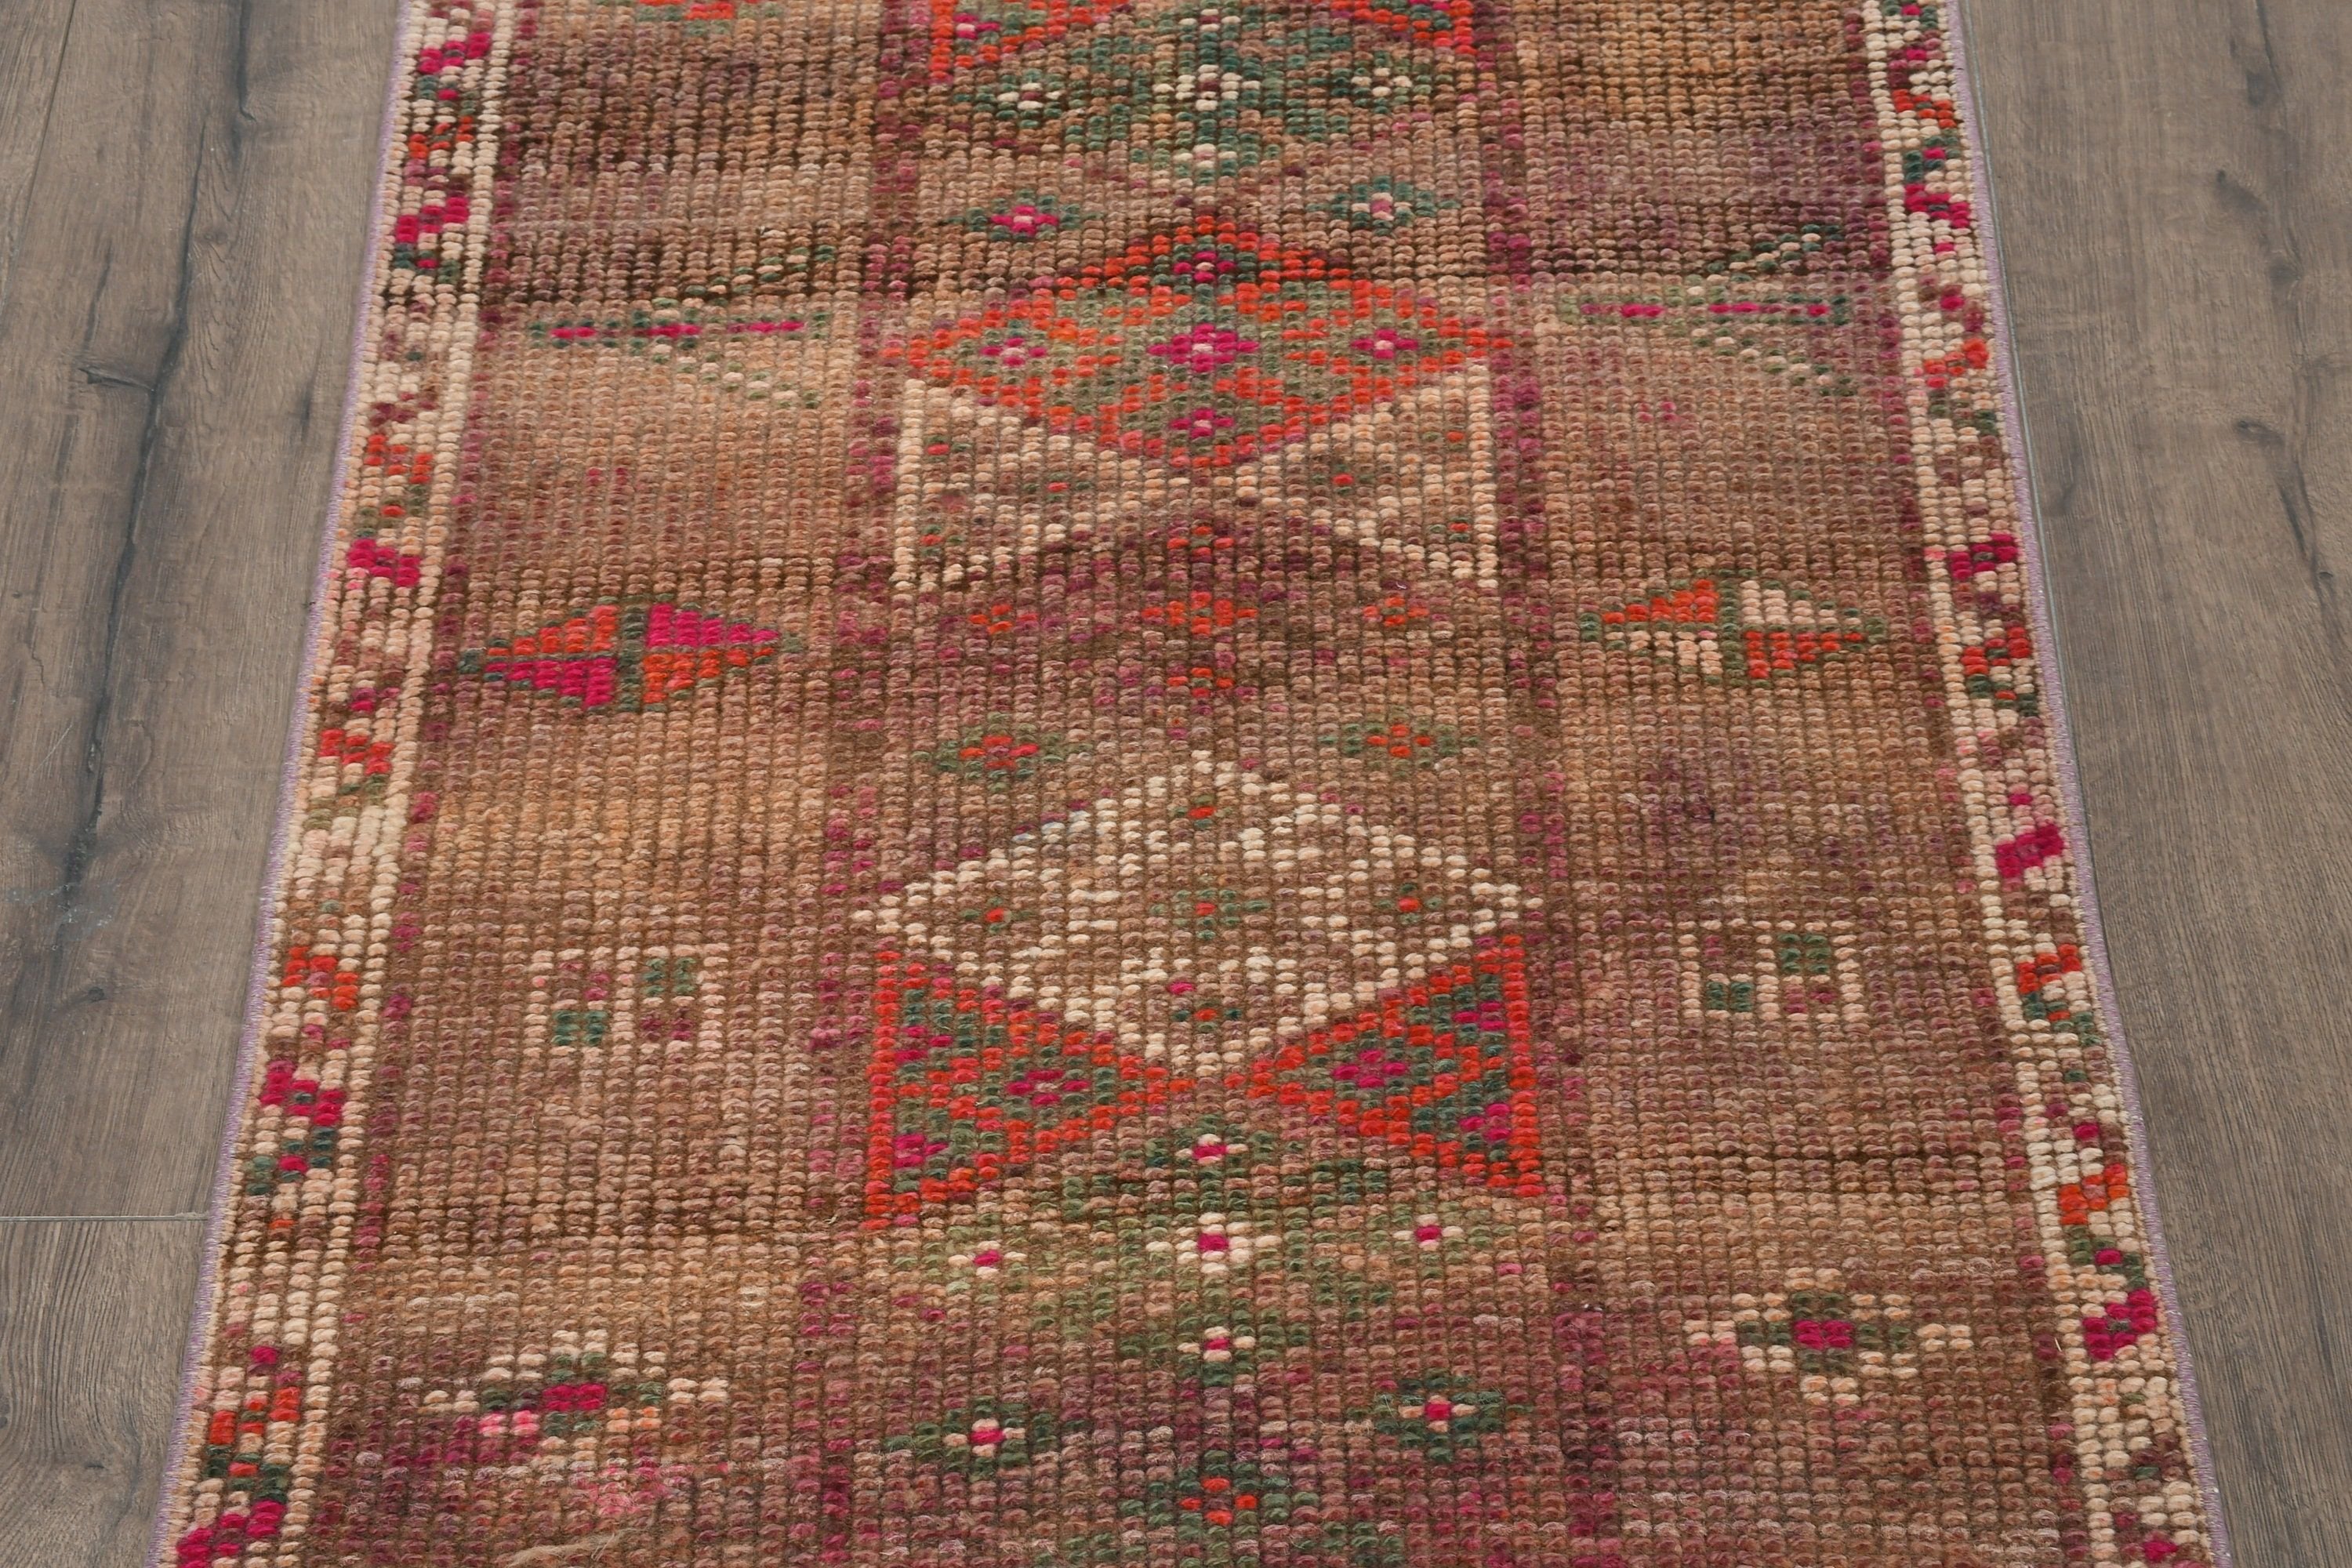 Turkish Rug, Vintage Rug, Stair Rug, Brown Moroccan Rug, Corridor Rugs, Rugs for Kitchen, 2.5x11.7 ft Runner Rug, Oriental Rug, Cool Rug